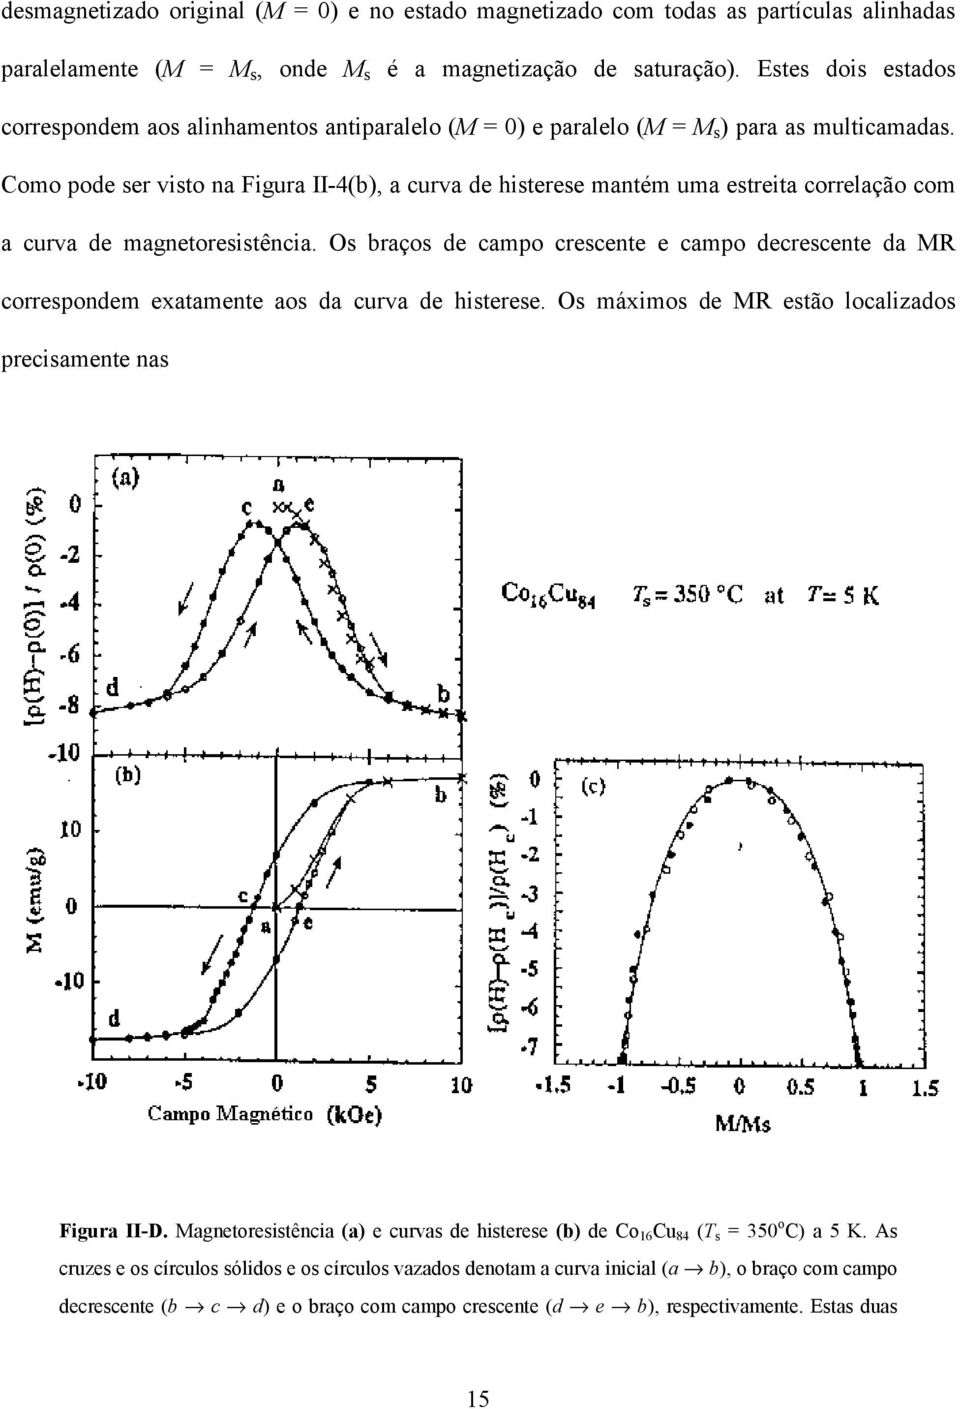 Como pode ser visto na Figura II-4(b), a curva de histerese mantém uma estreita correlação com a curva de magnetoresistência.